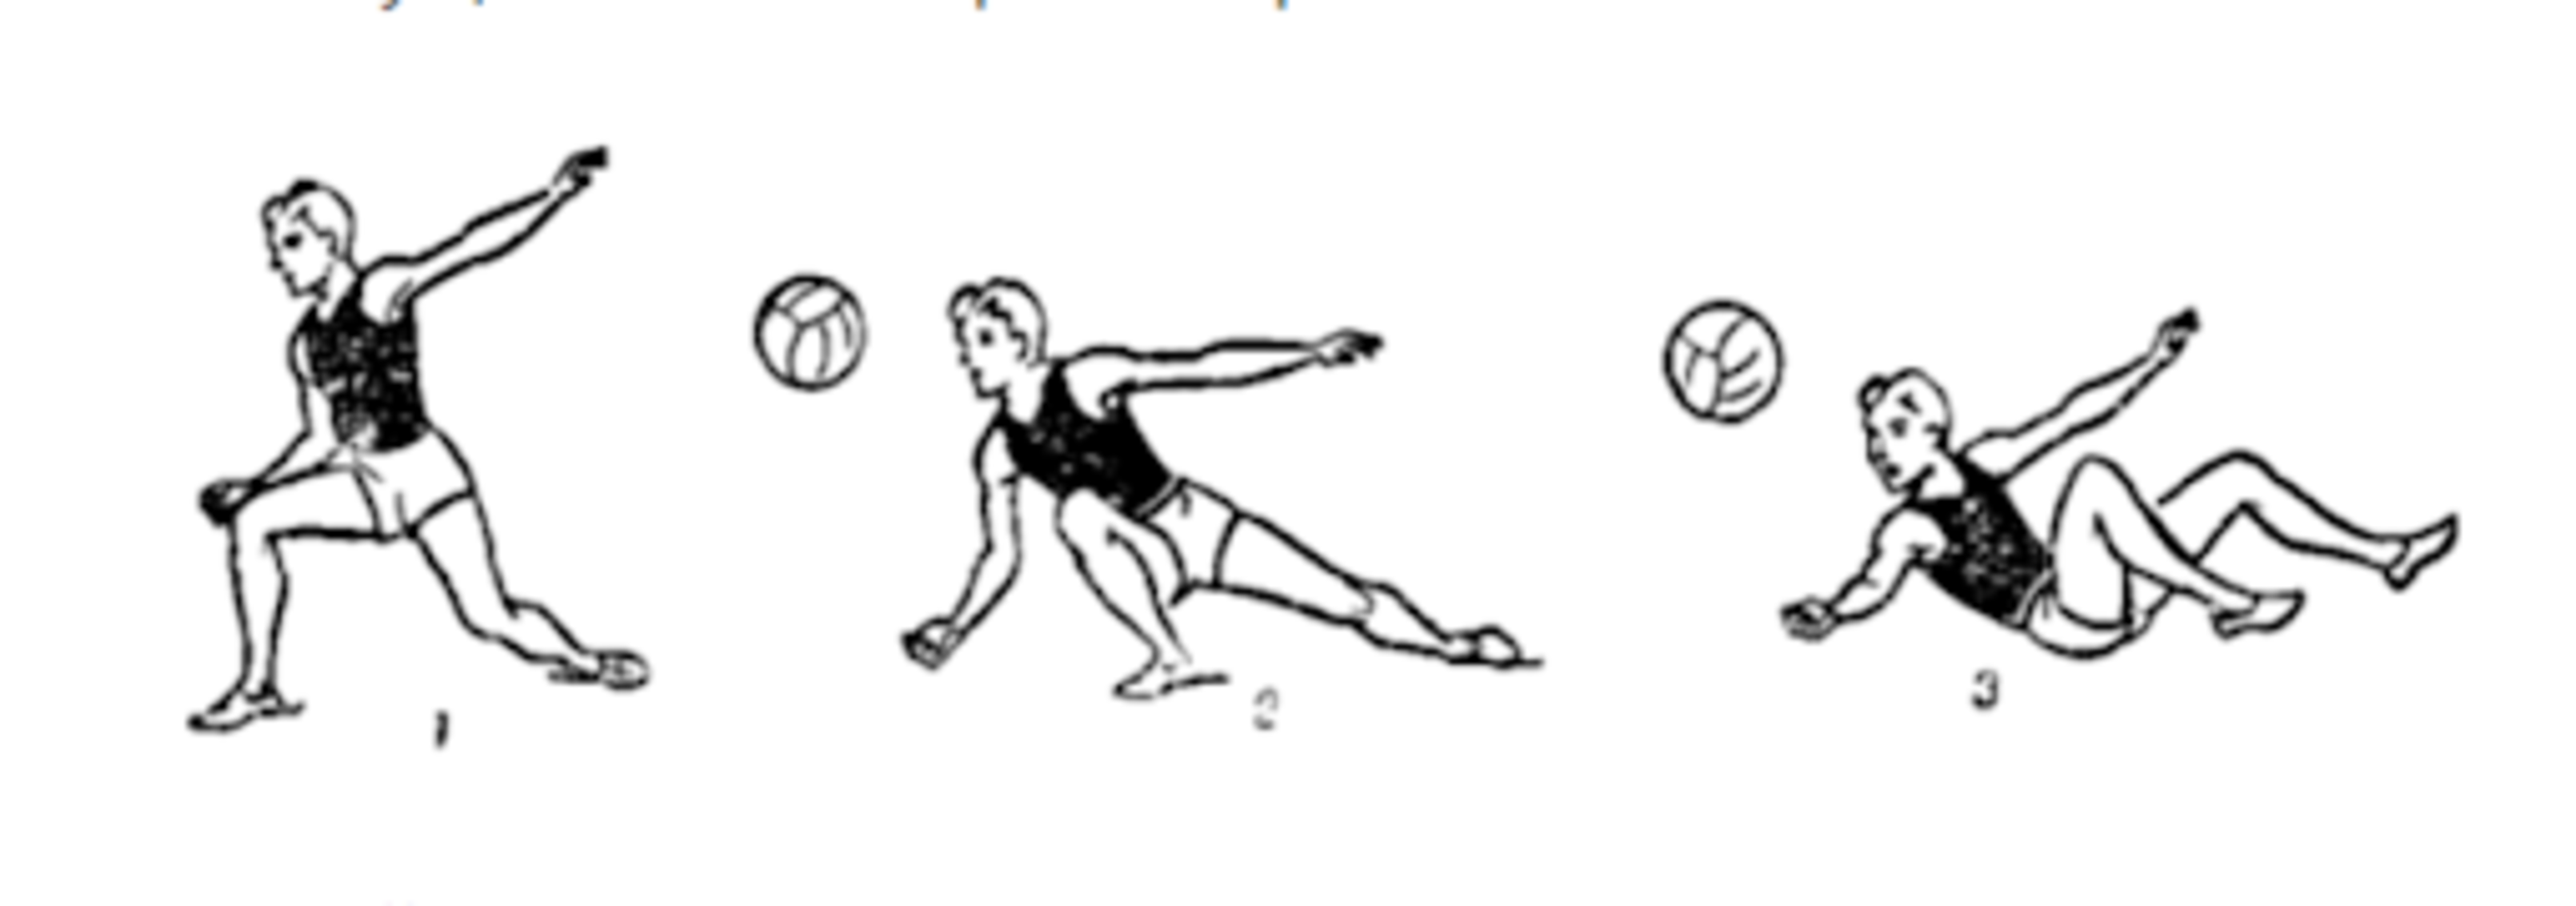 Прием мяча одной рукой снизу в волейболе